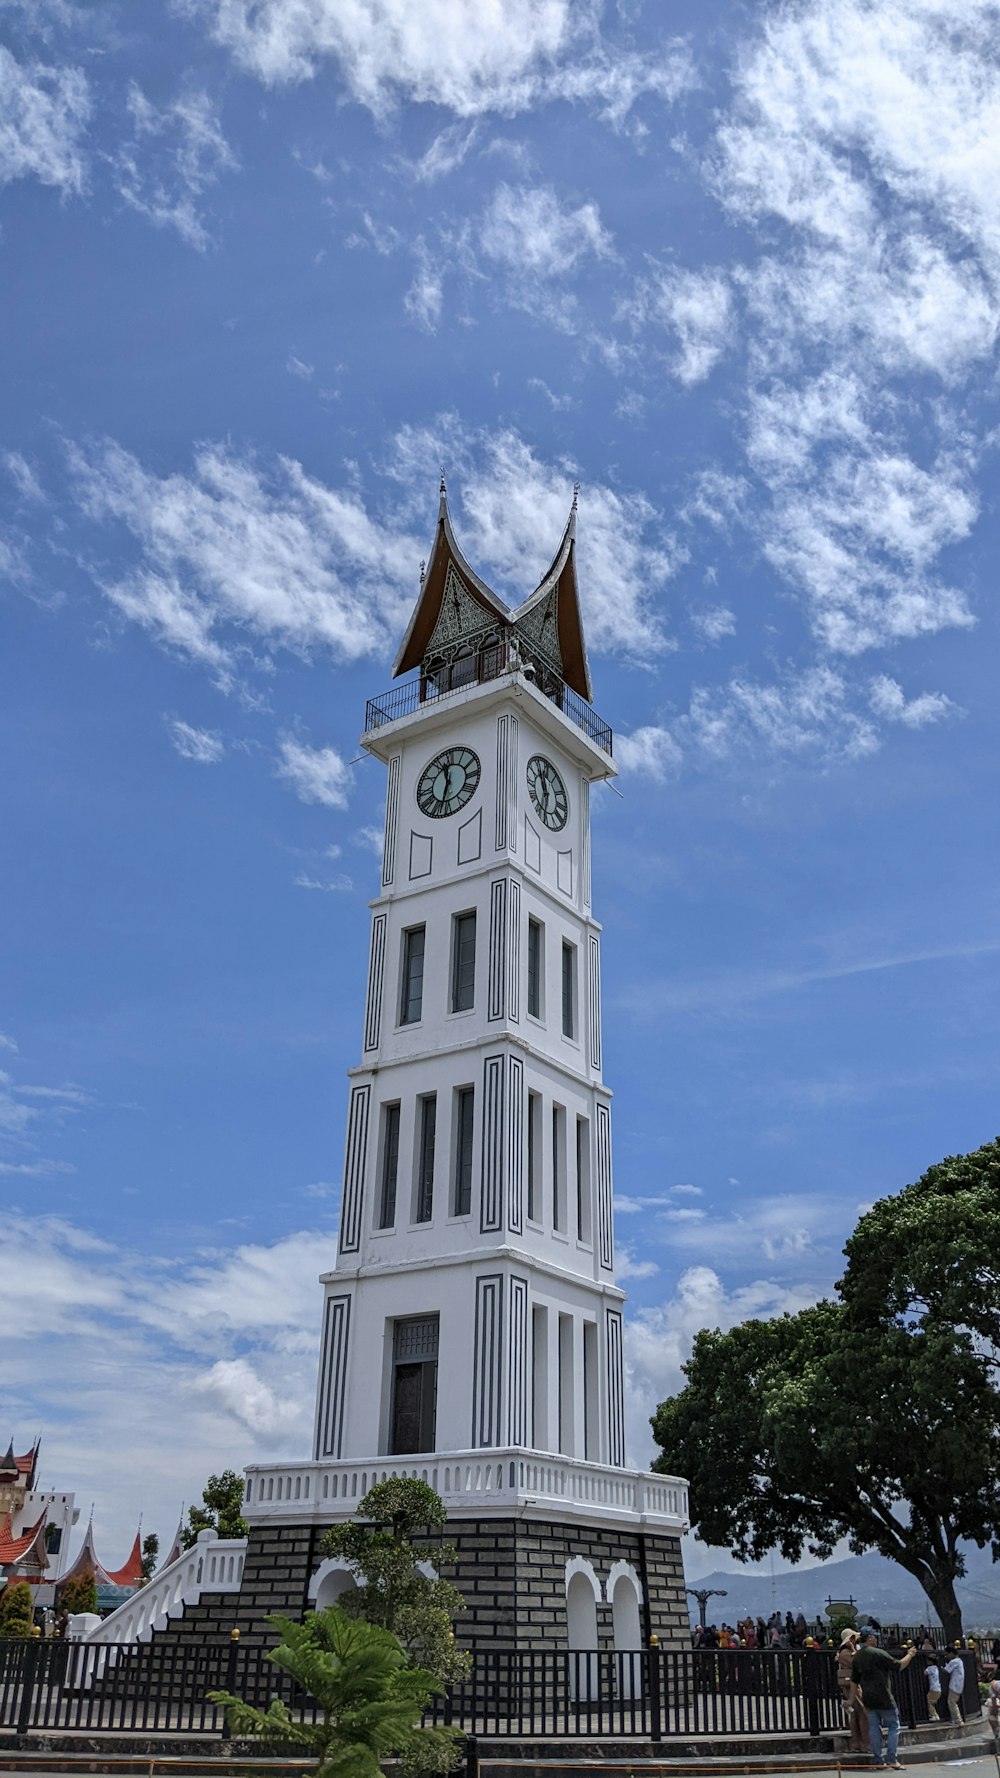 Una alta torre de reloj blanca con un fondo de cielo